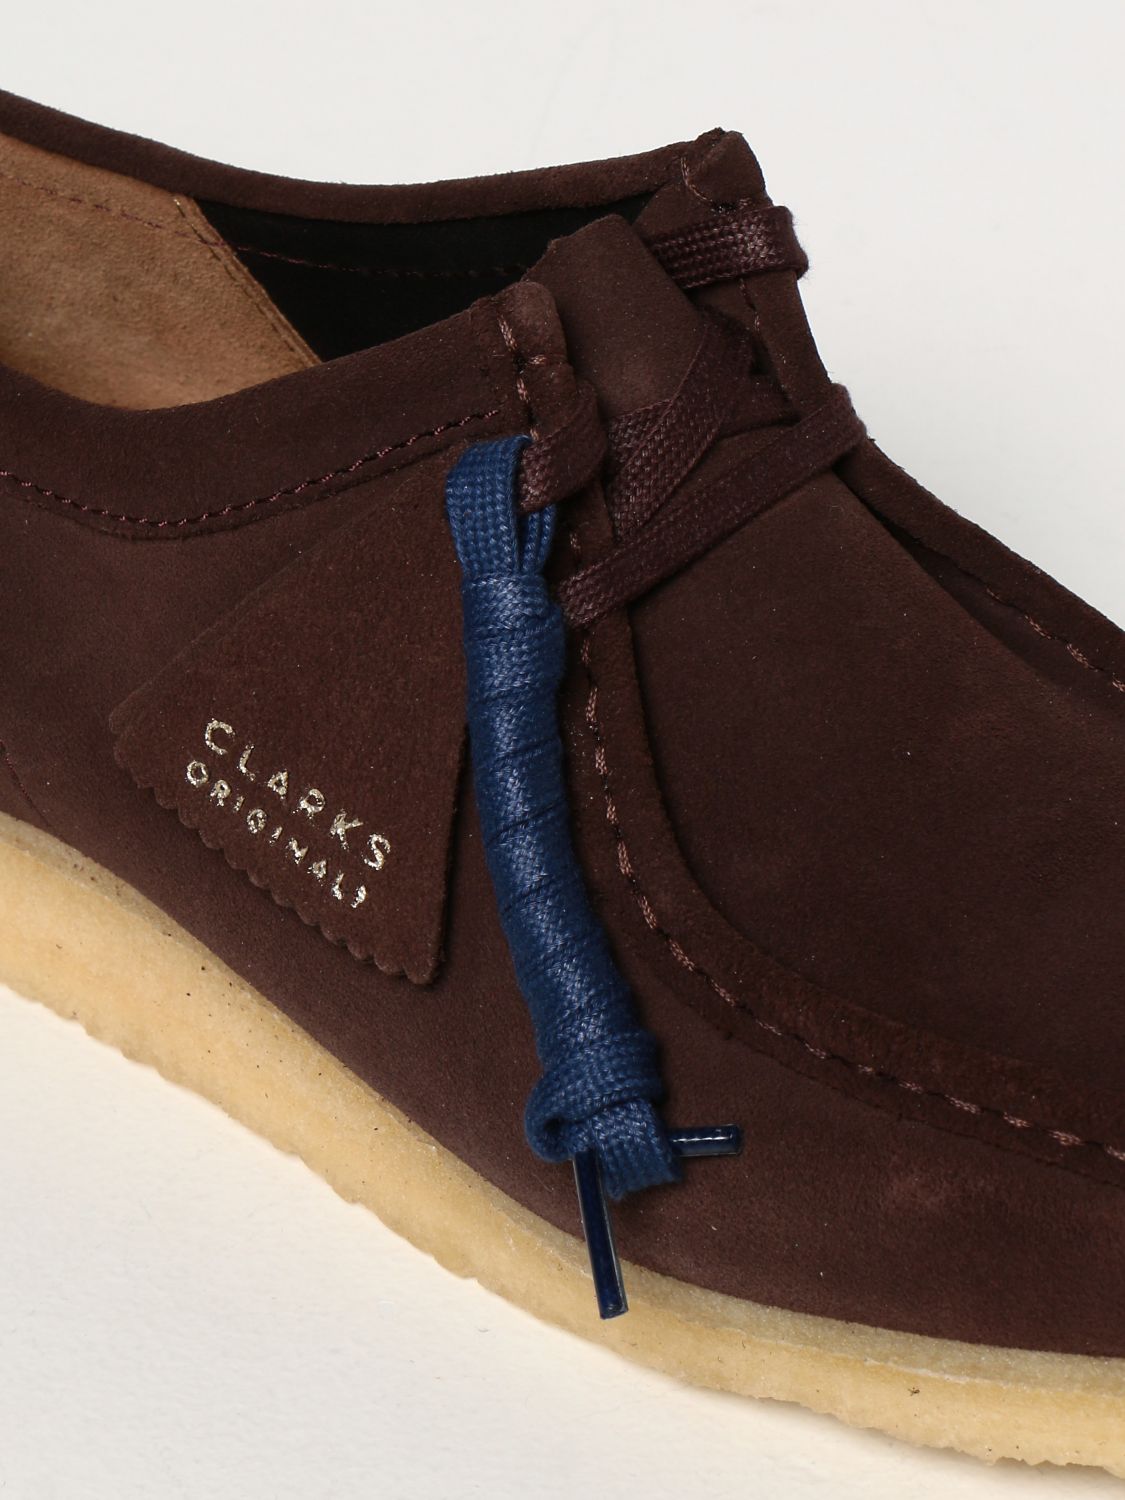 Desert boots Clarks: Shoes men Clarks Originals dark 4